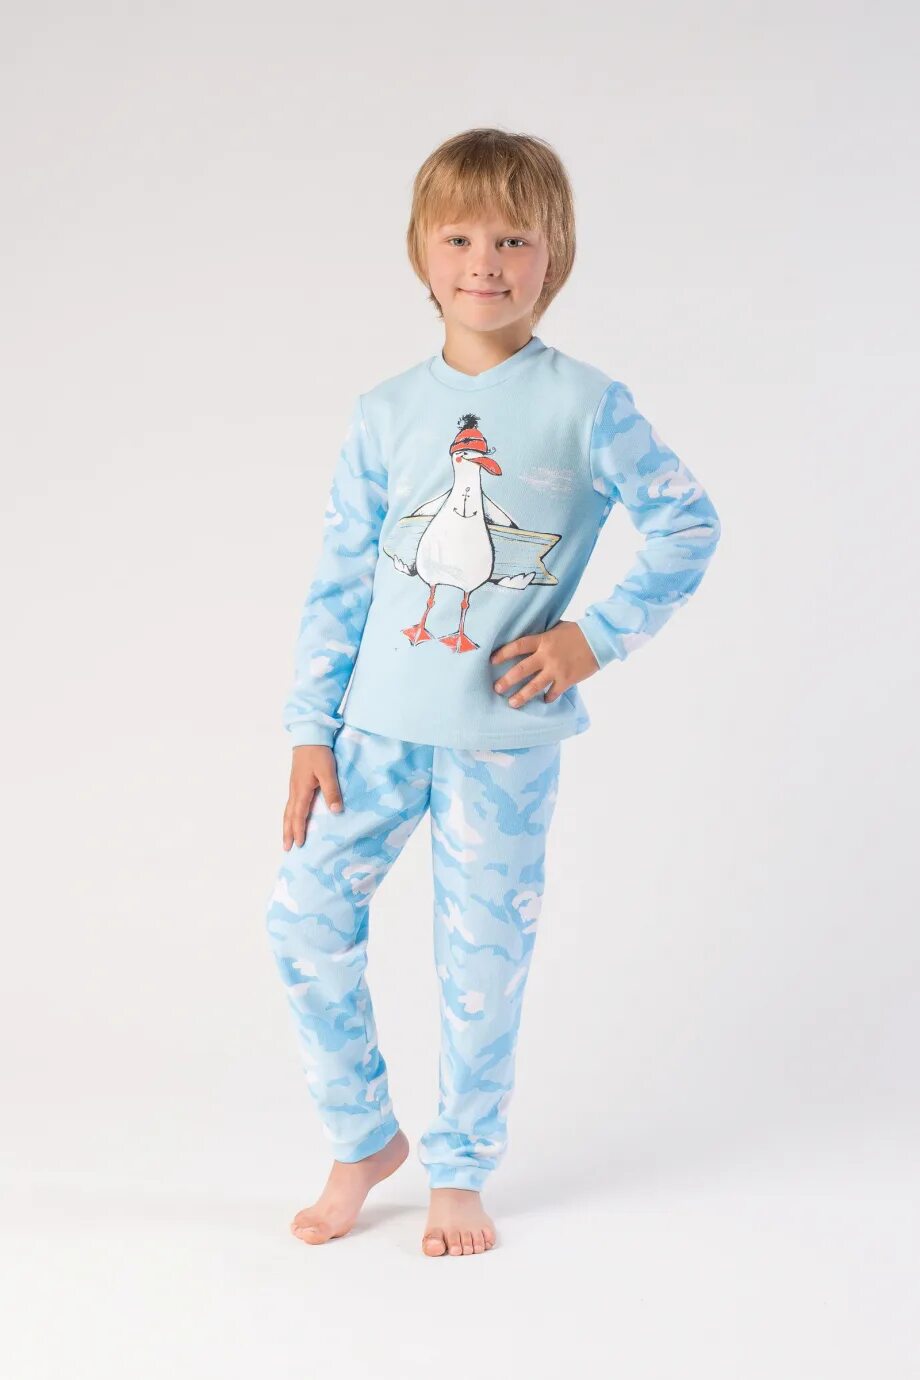 Пижама Свитанок для мальчика. Пижамы детские с длинным рукавом на 3 года. Маленький мальчик в пижаме. Пижамы россия